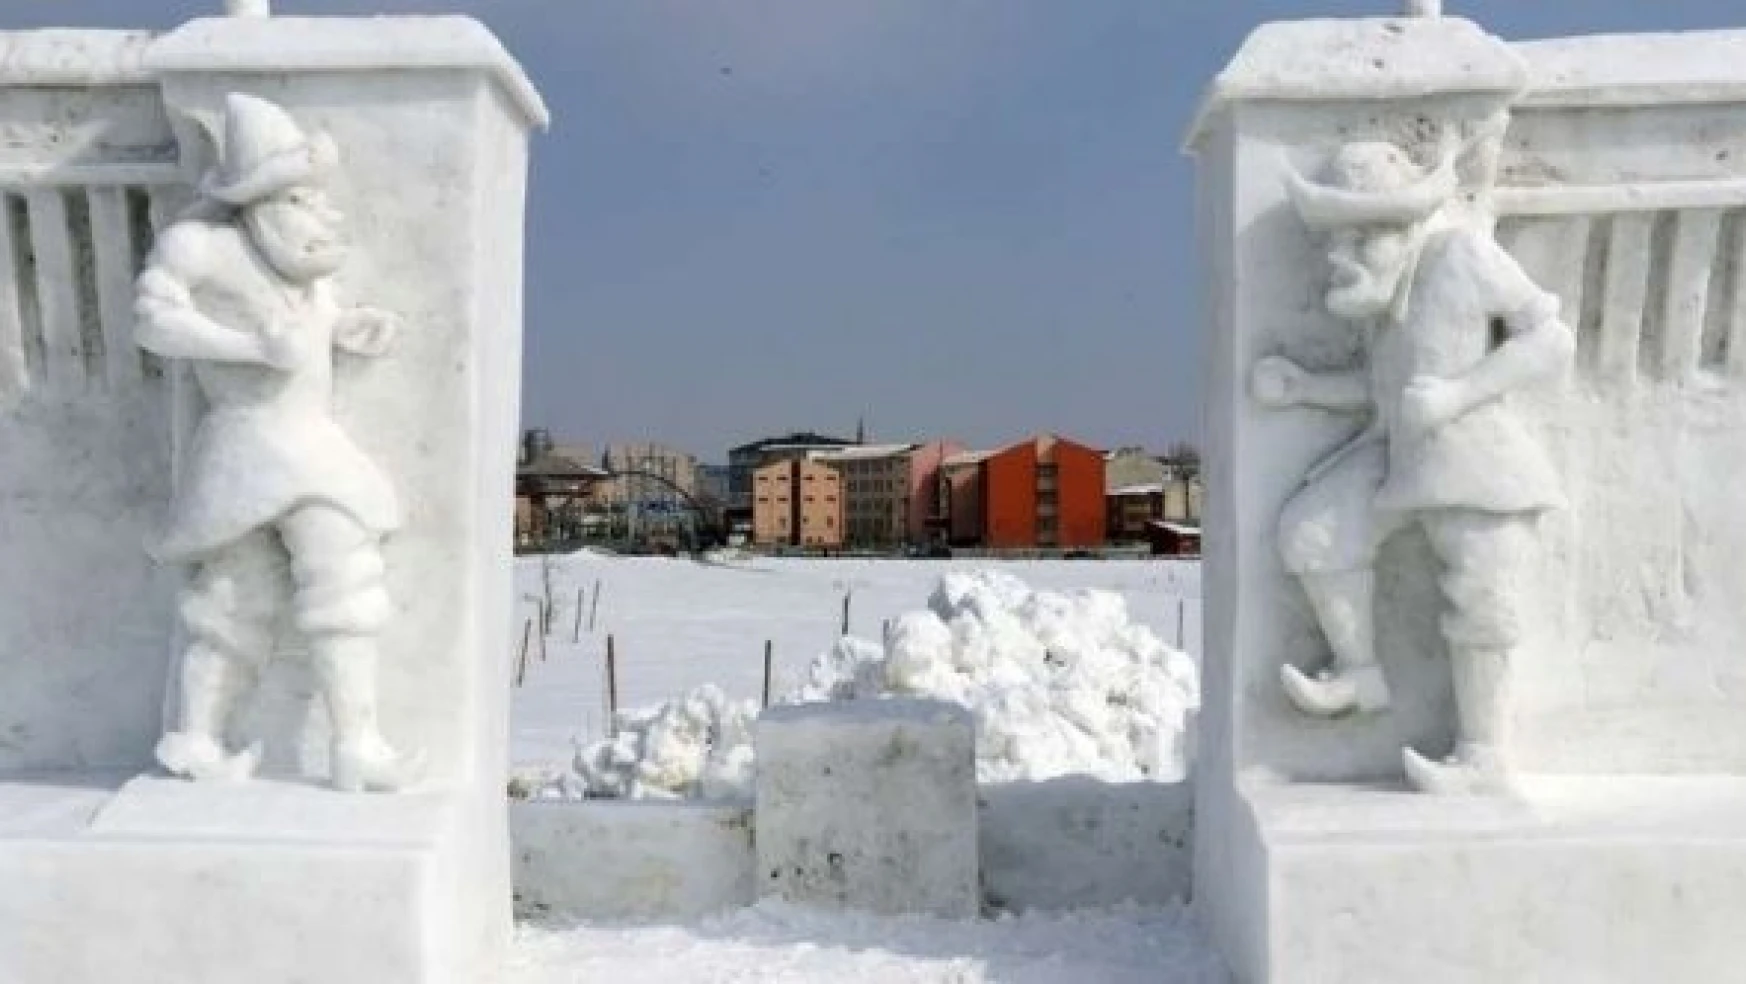 Ağrı  2. Kar Festivali'nde kardan masal kahramanları yer alacak